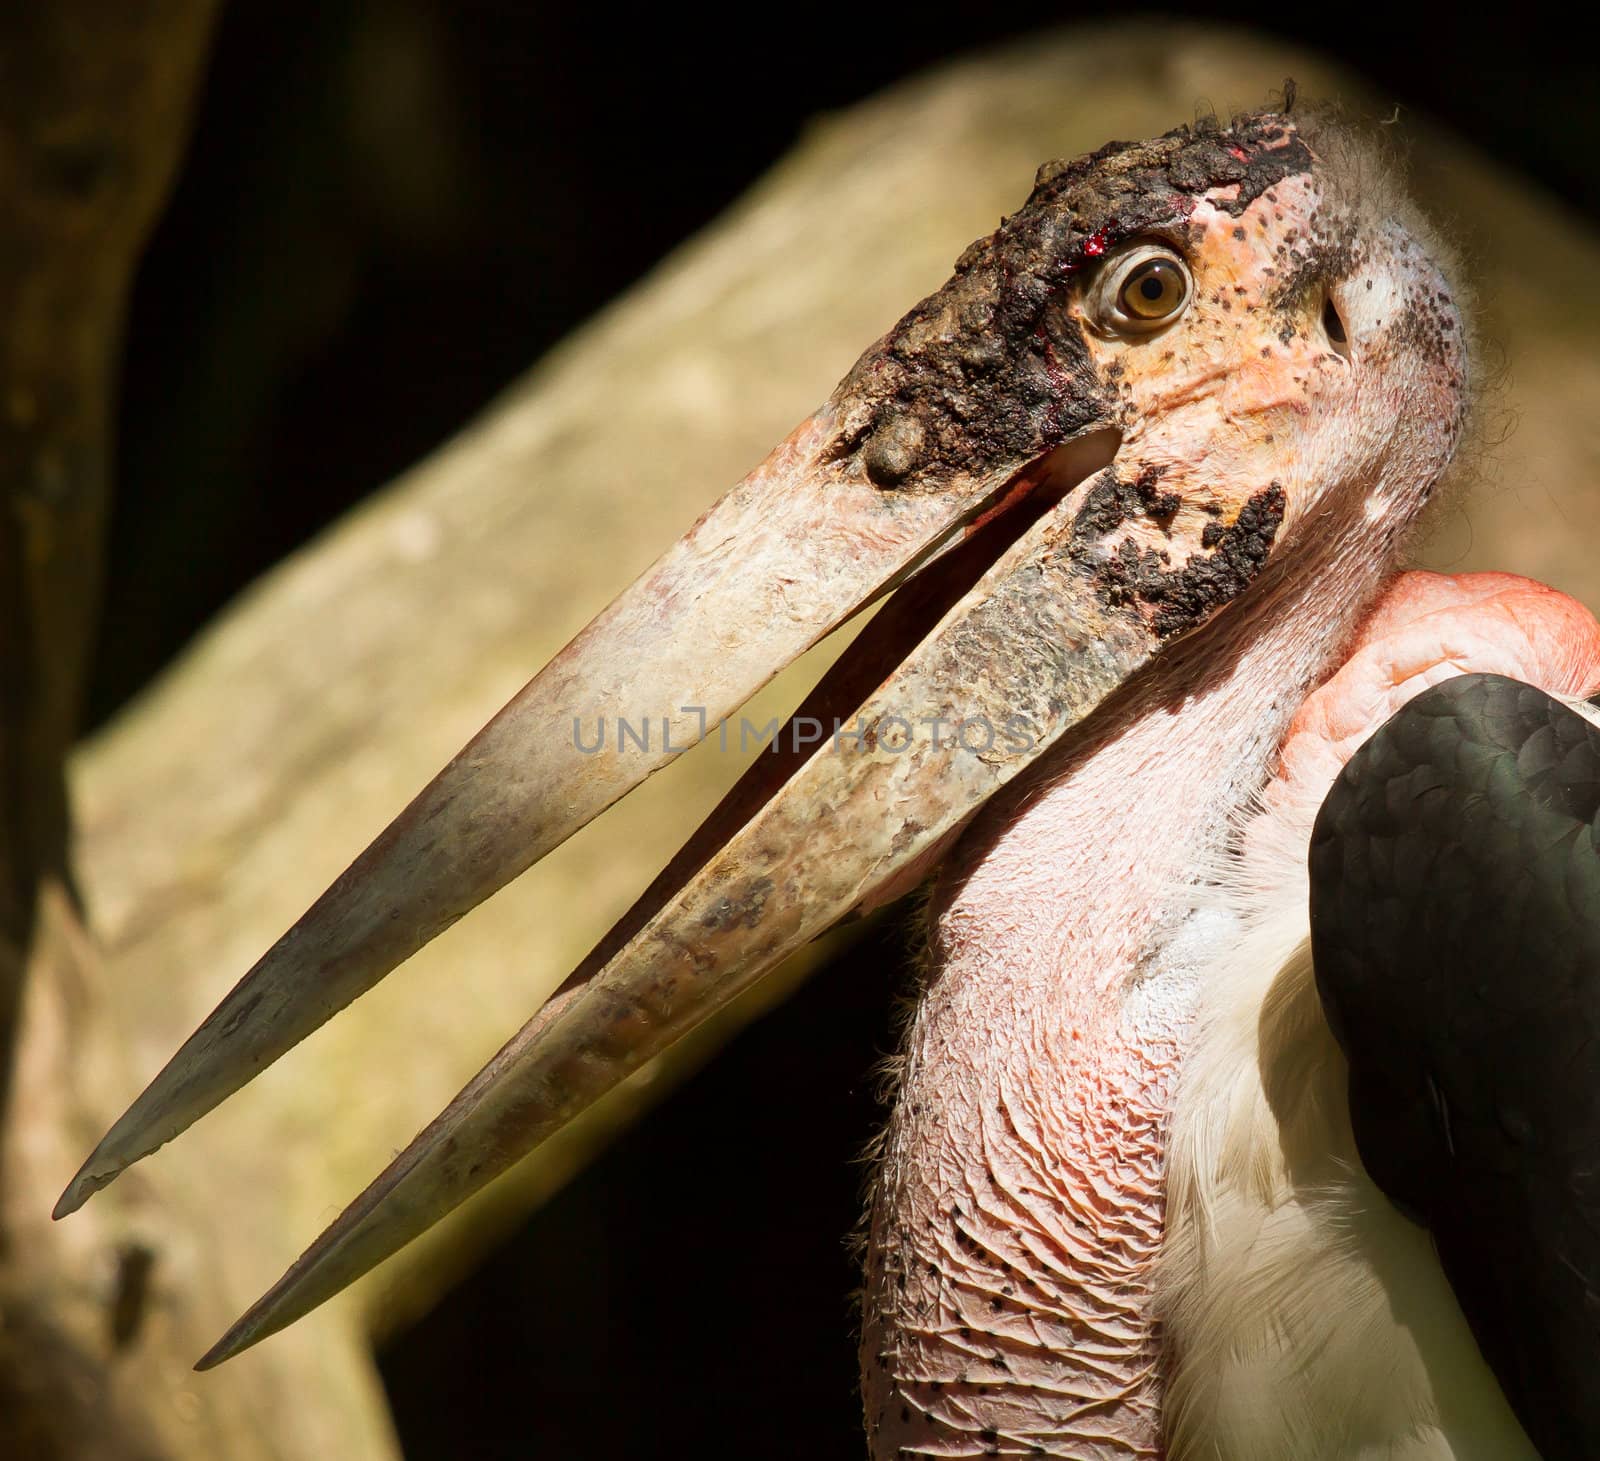 A close-up of an marabu  by michaklootwijk